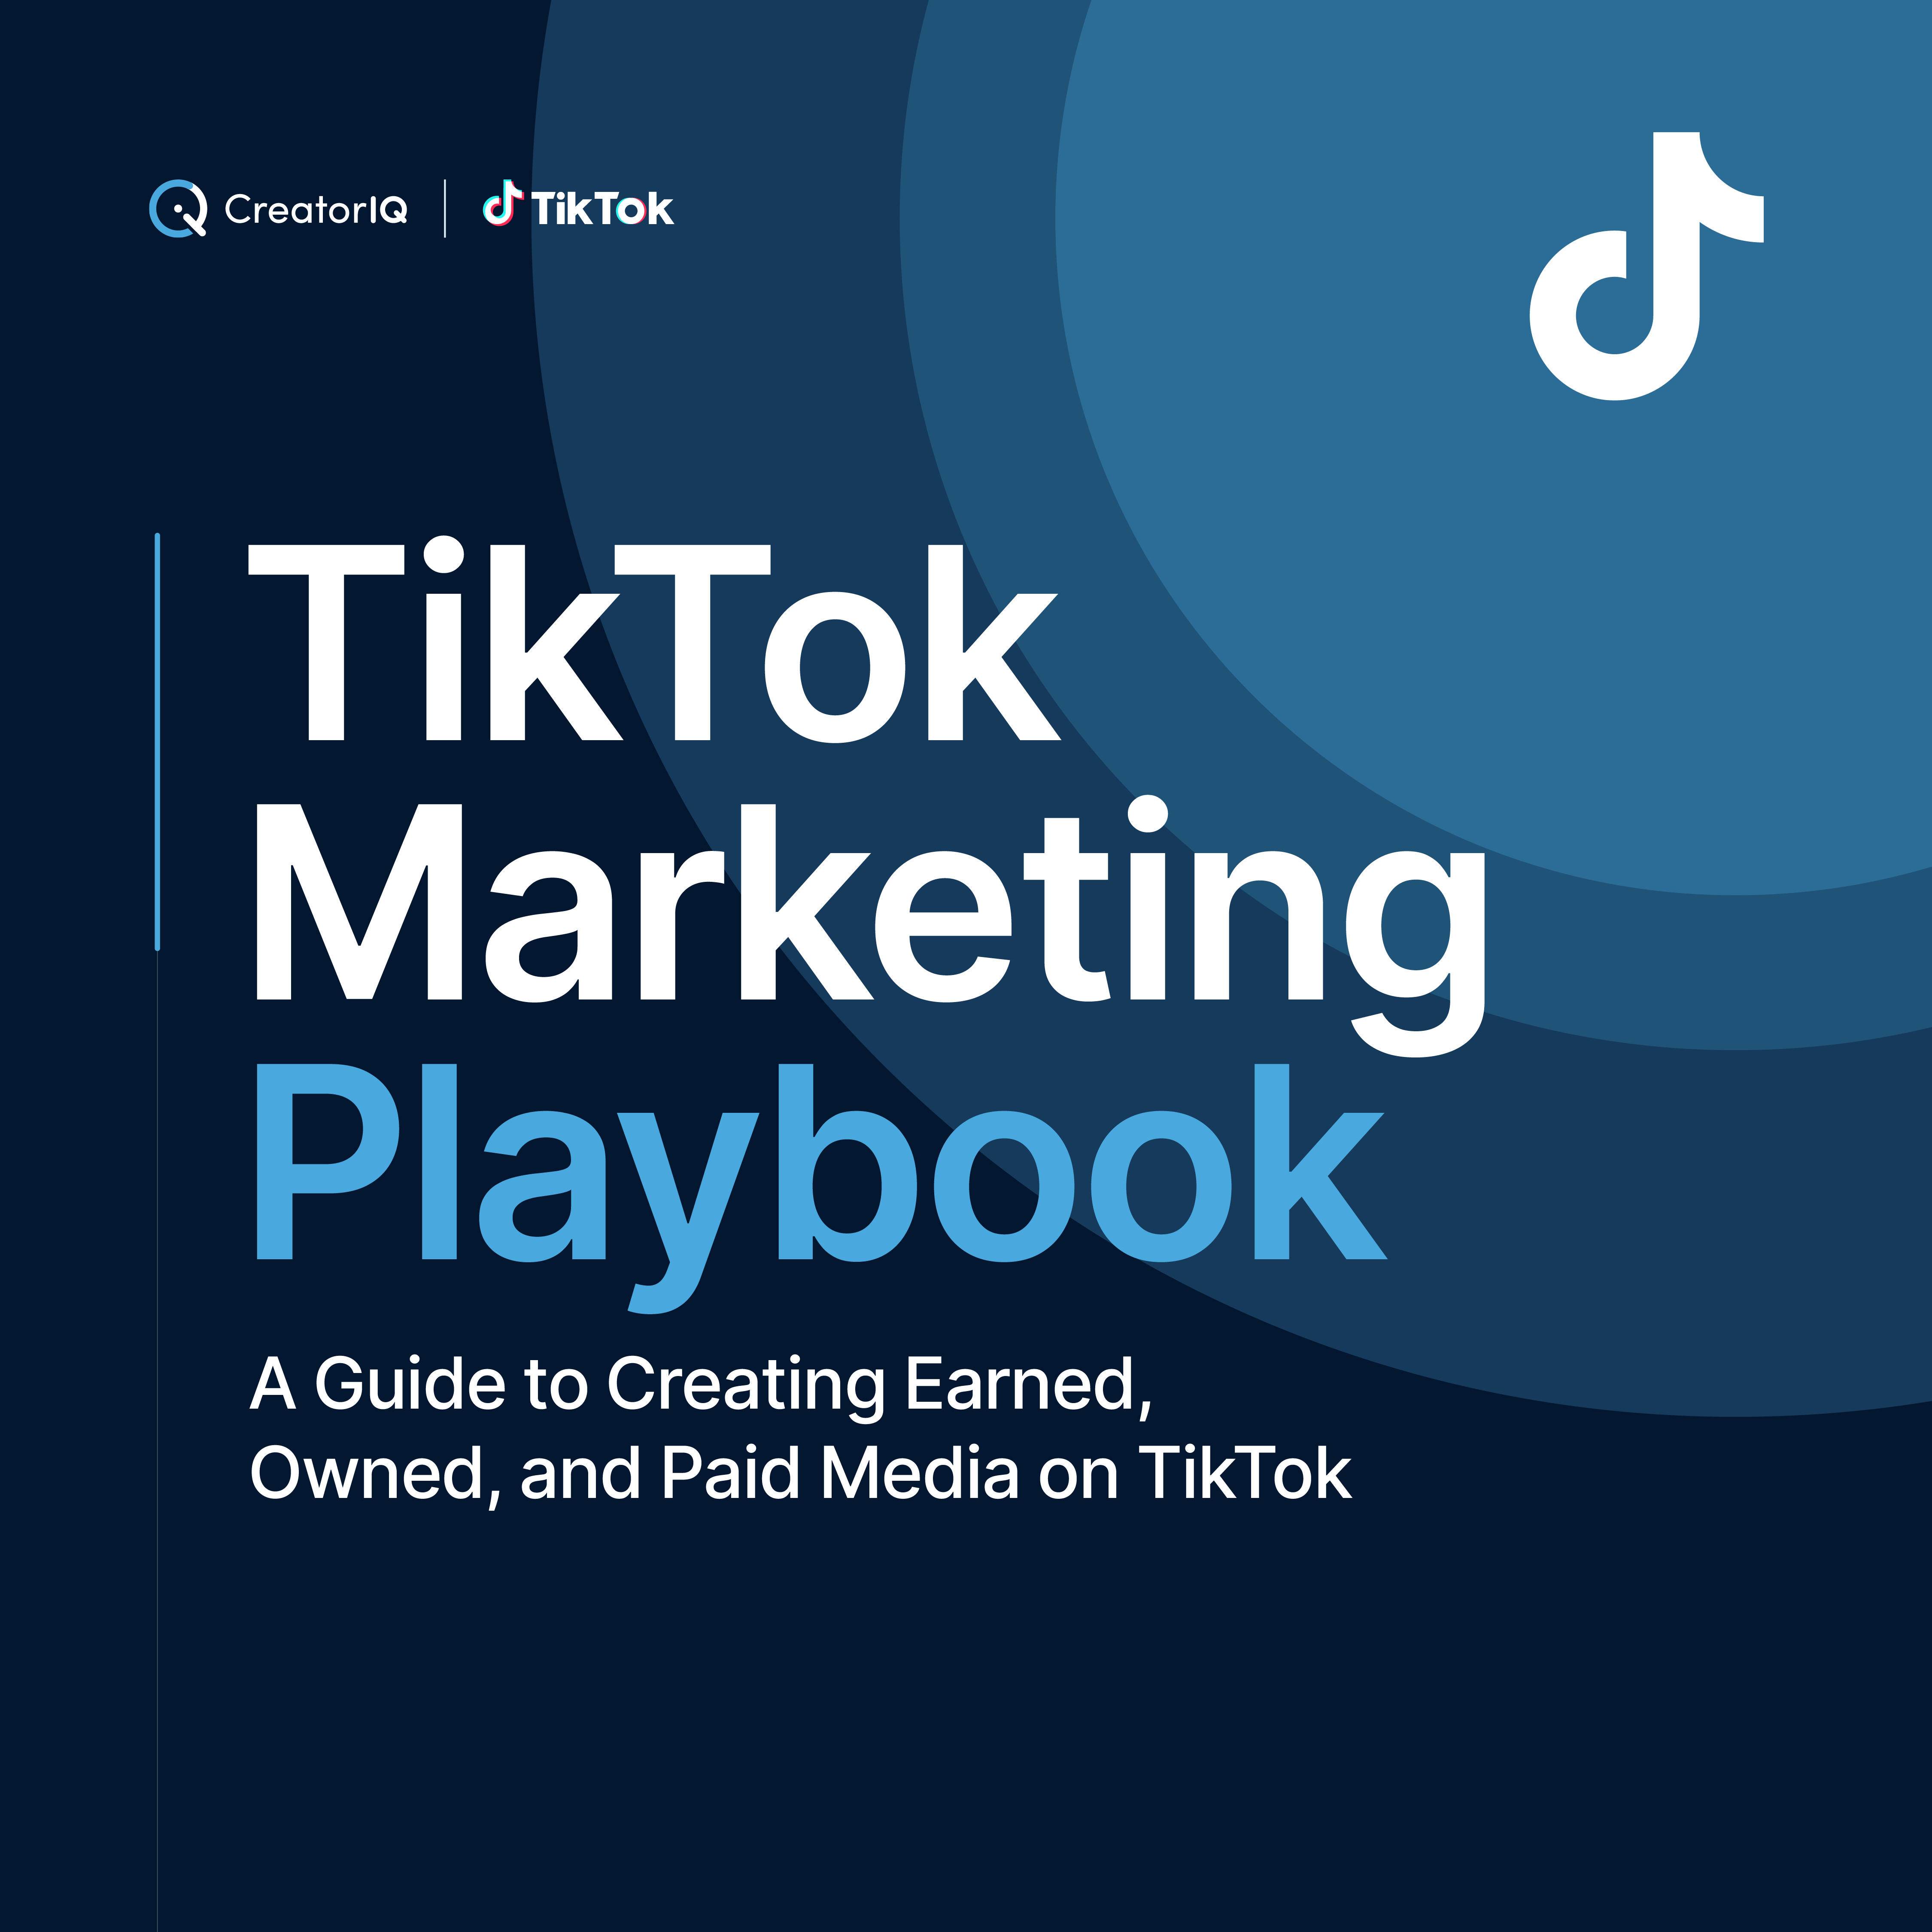 TikTok Marketing Playbook